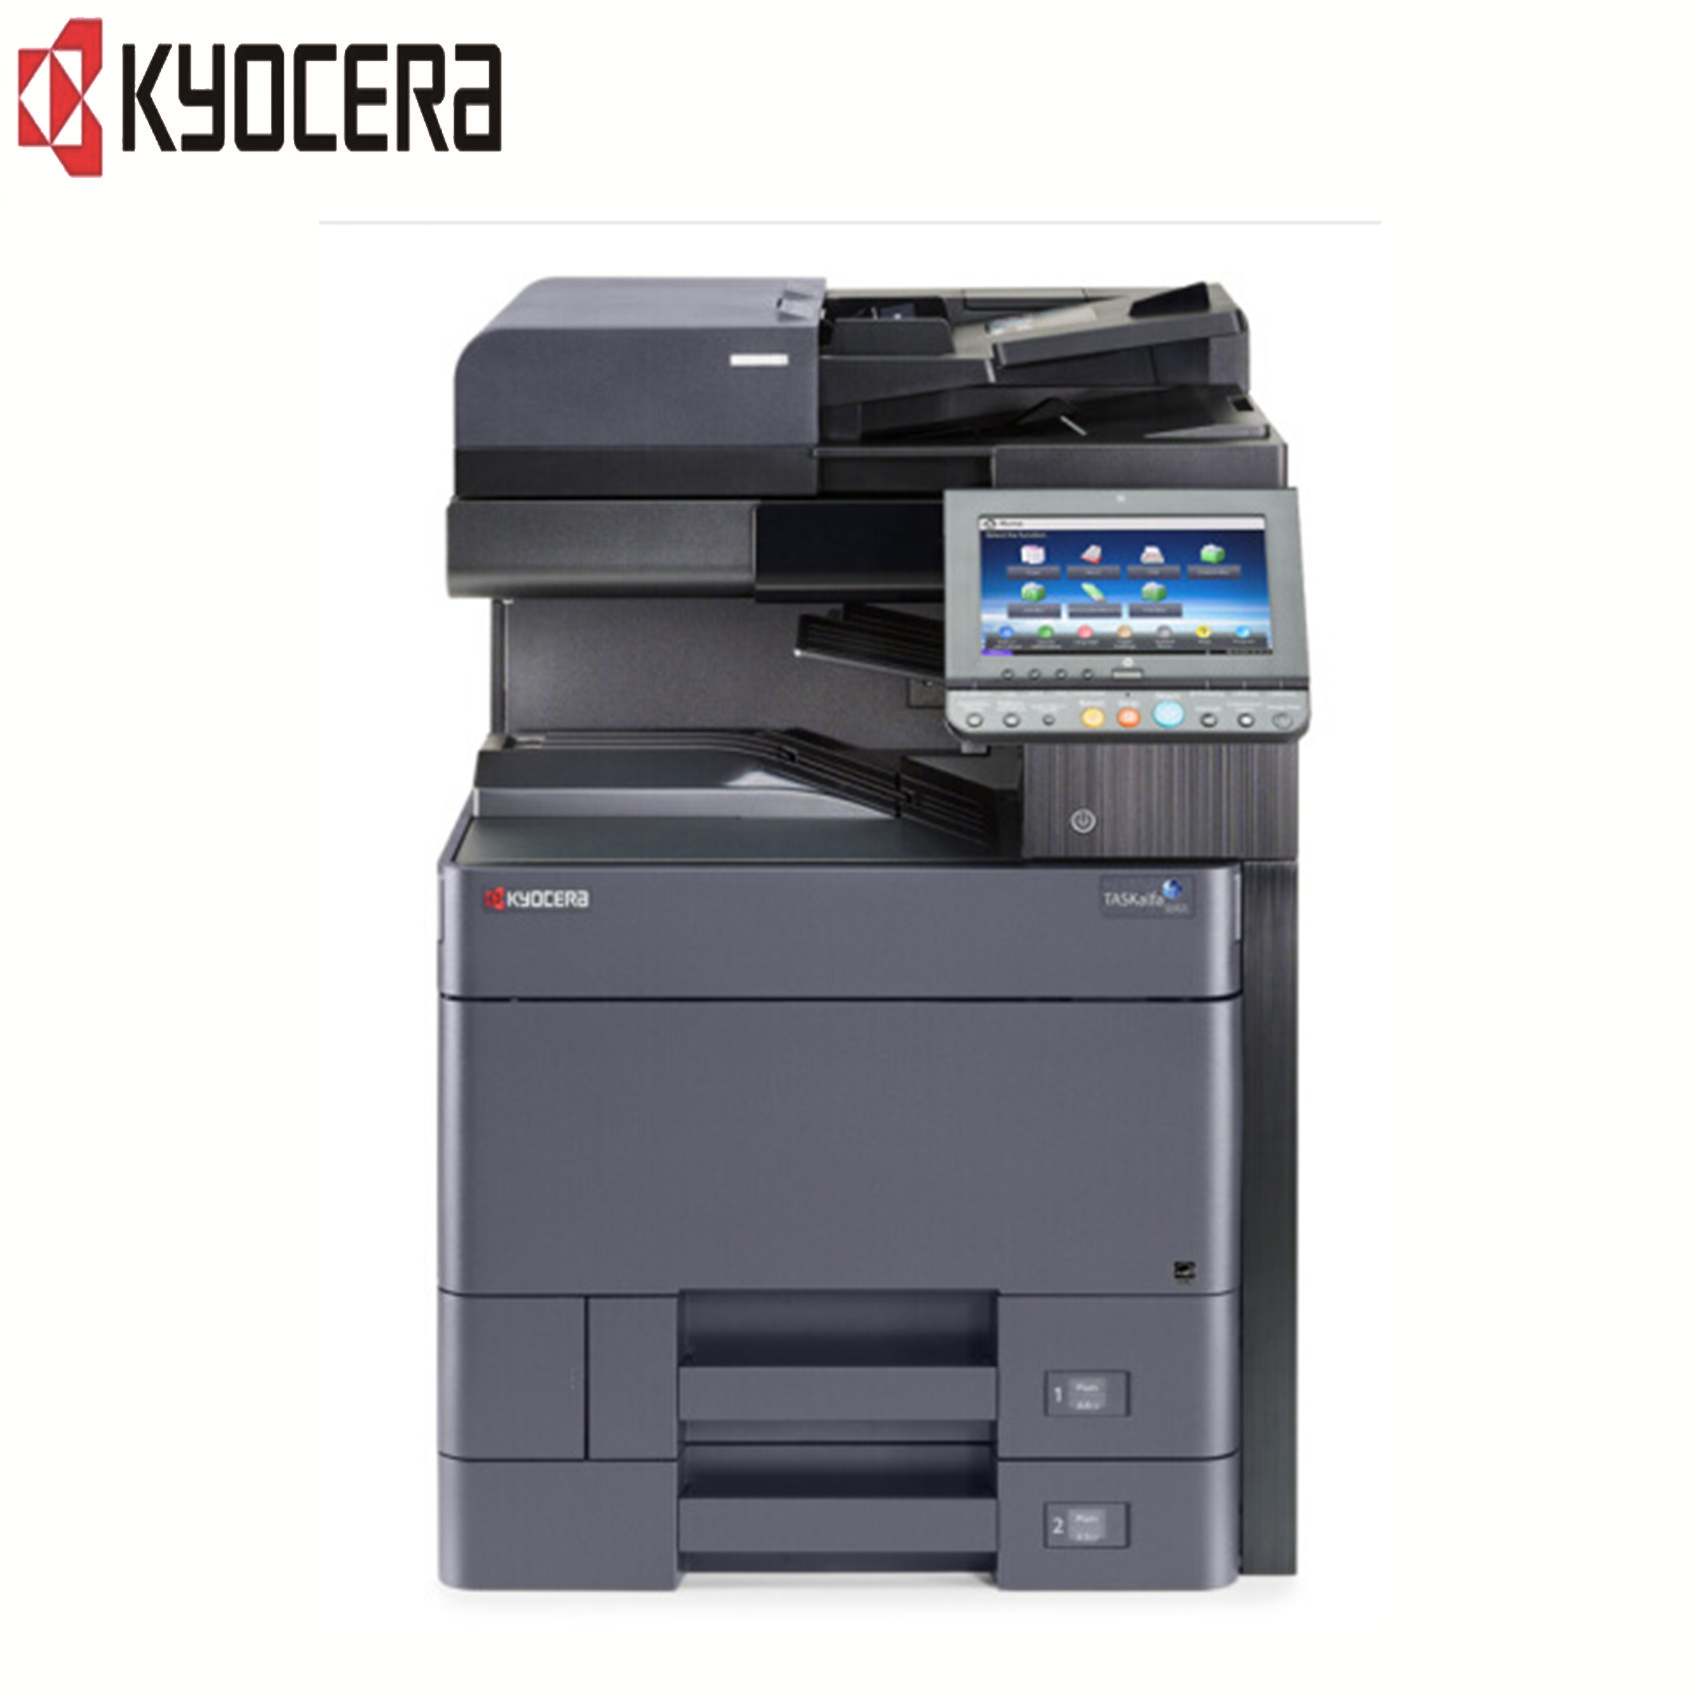 京瓷(KYOCERA)TASKalfa 5002i 高速黑白数码复合机 打印/复印/扫描